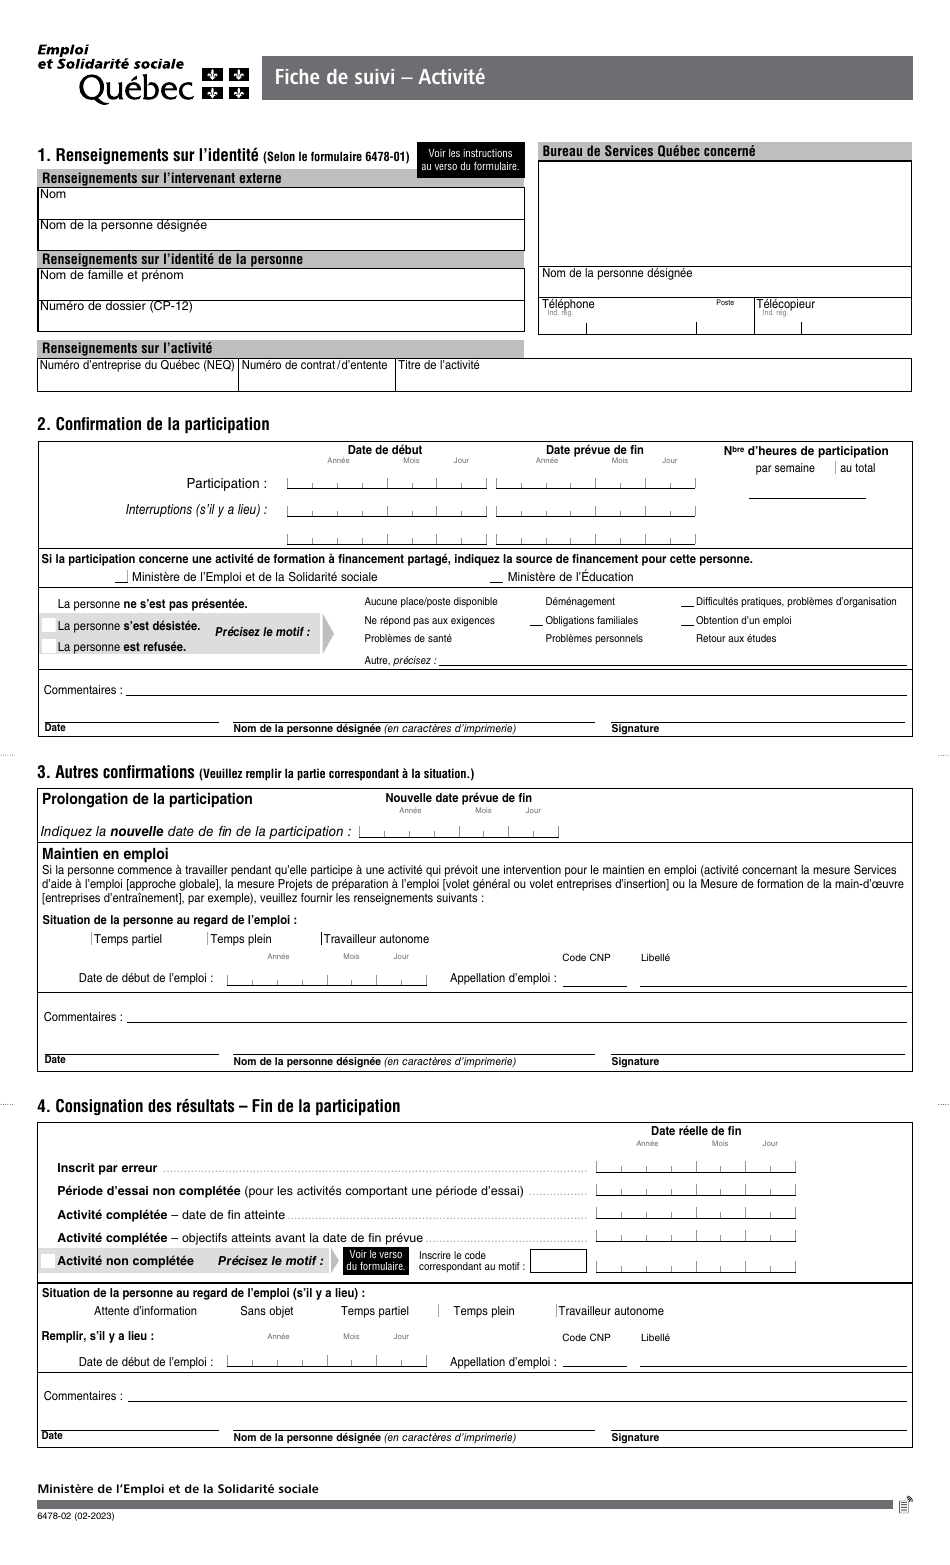 Forme 6478-02 Fiche De Suivi - Activite - Canada (French), Page 1